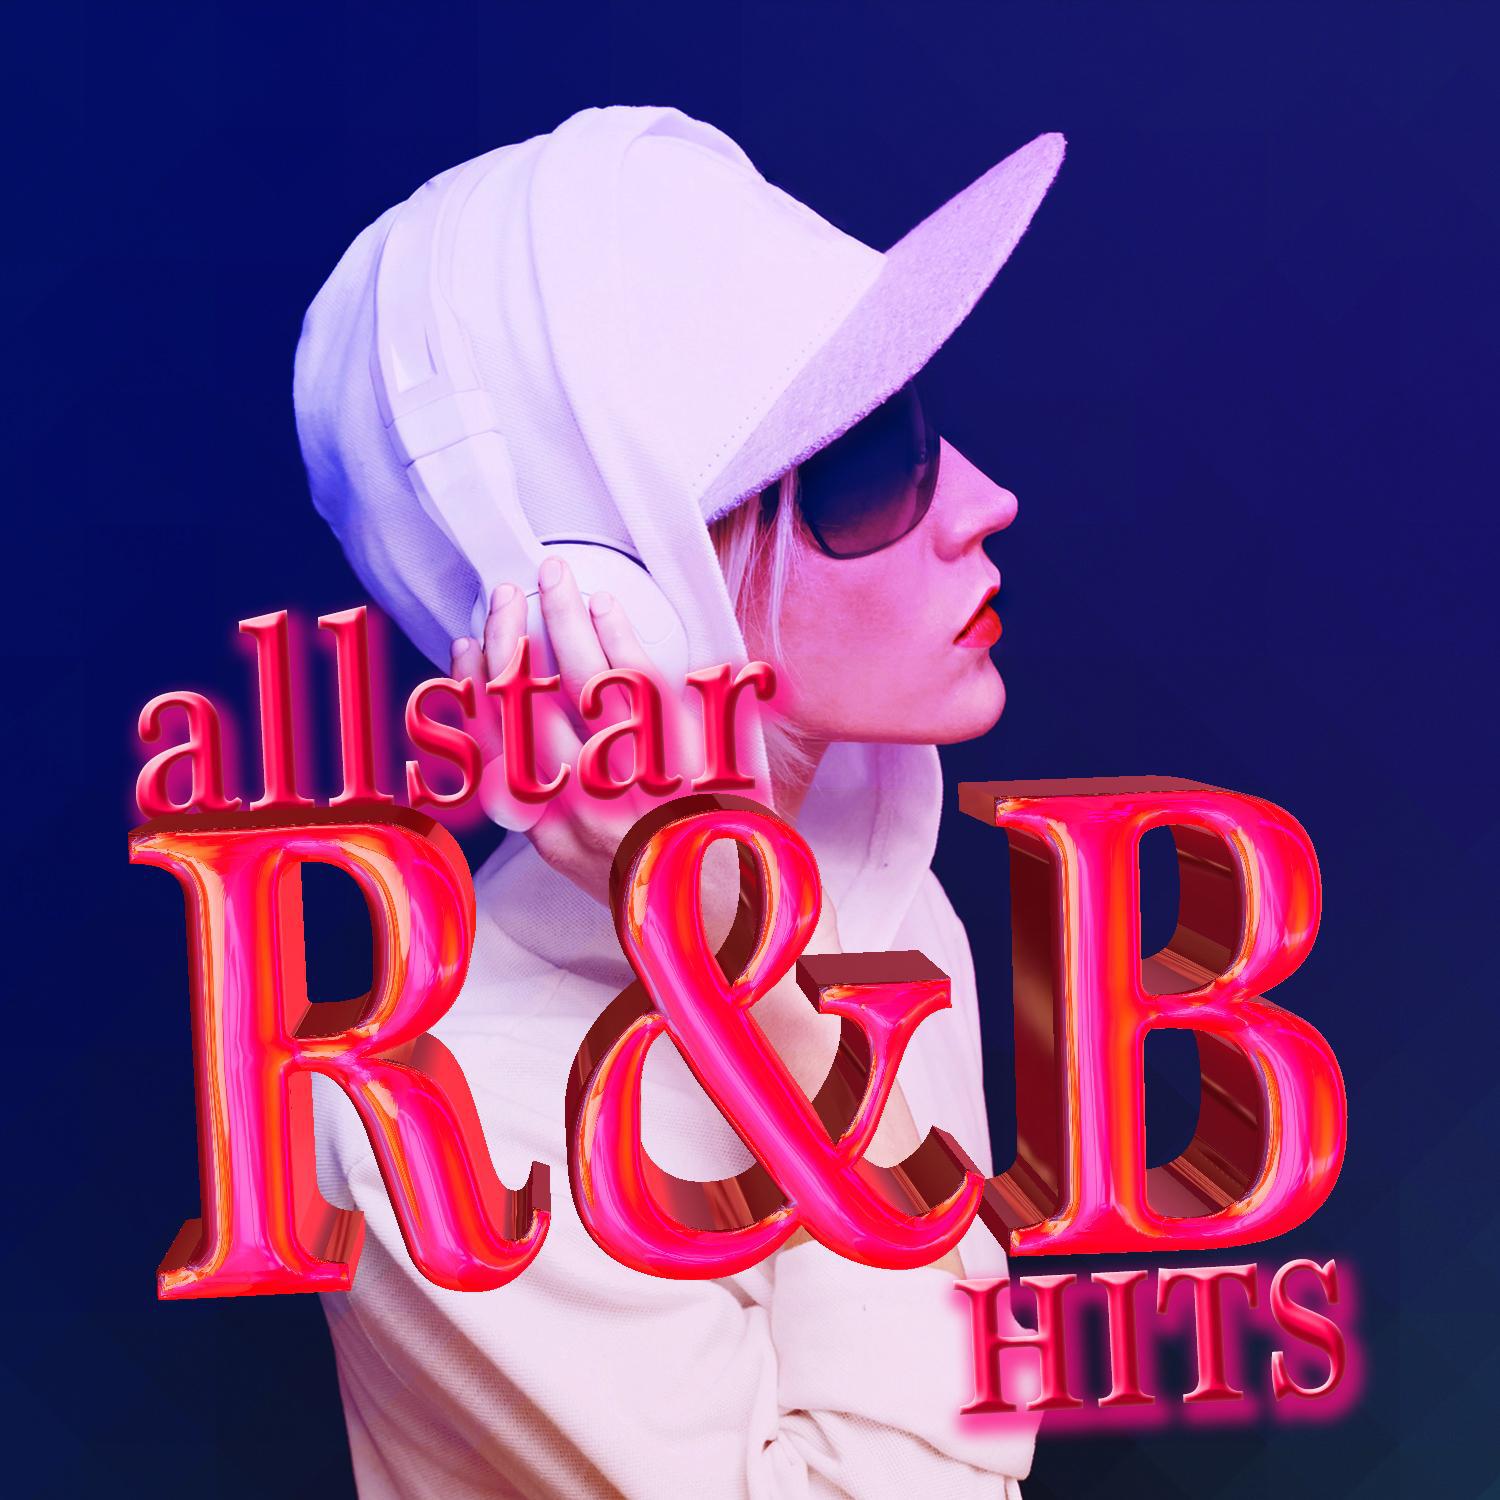 Allstar R&B Hits